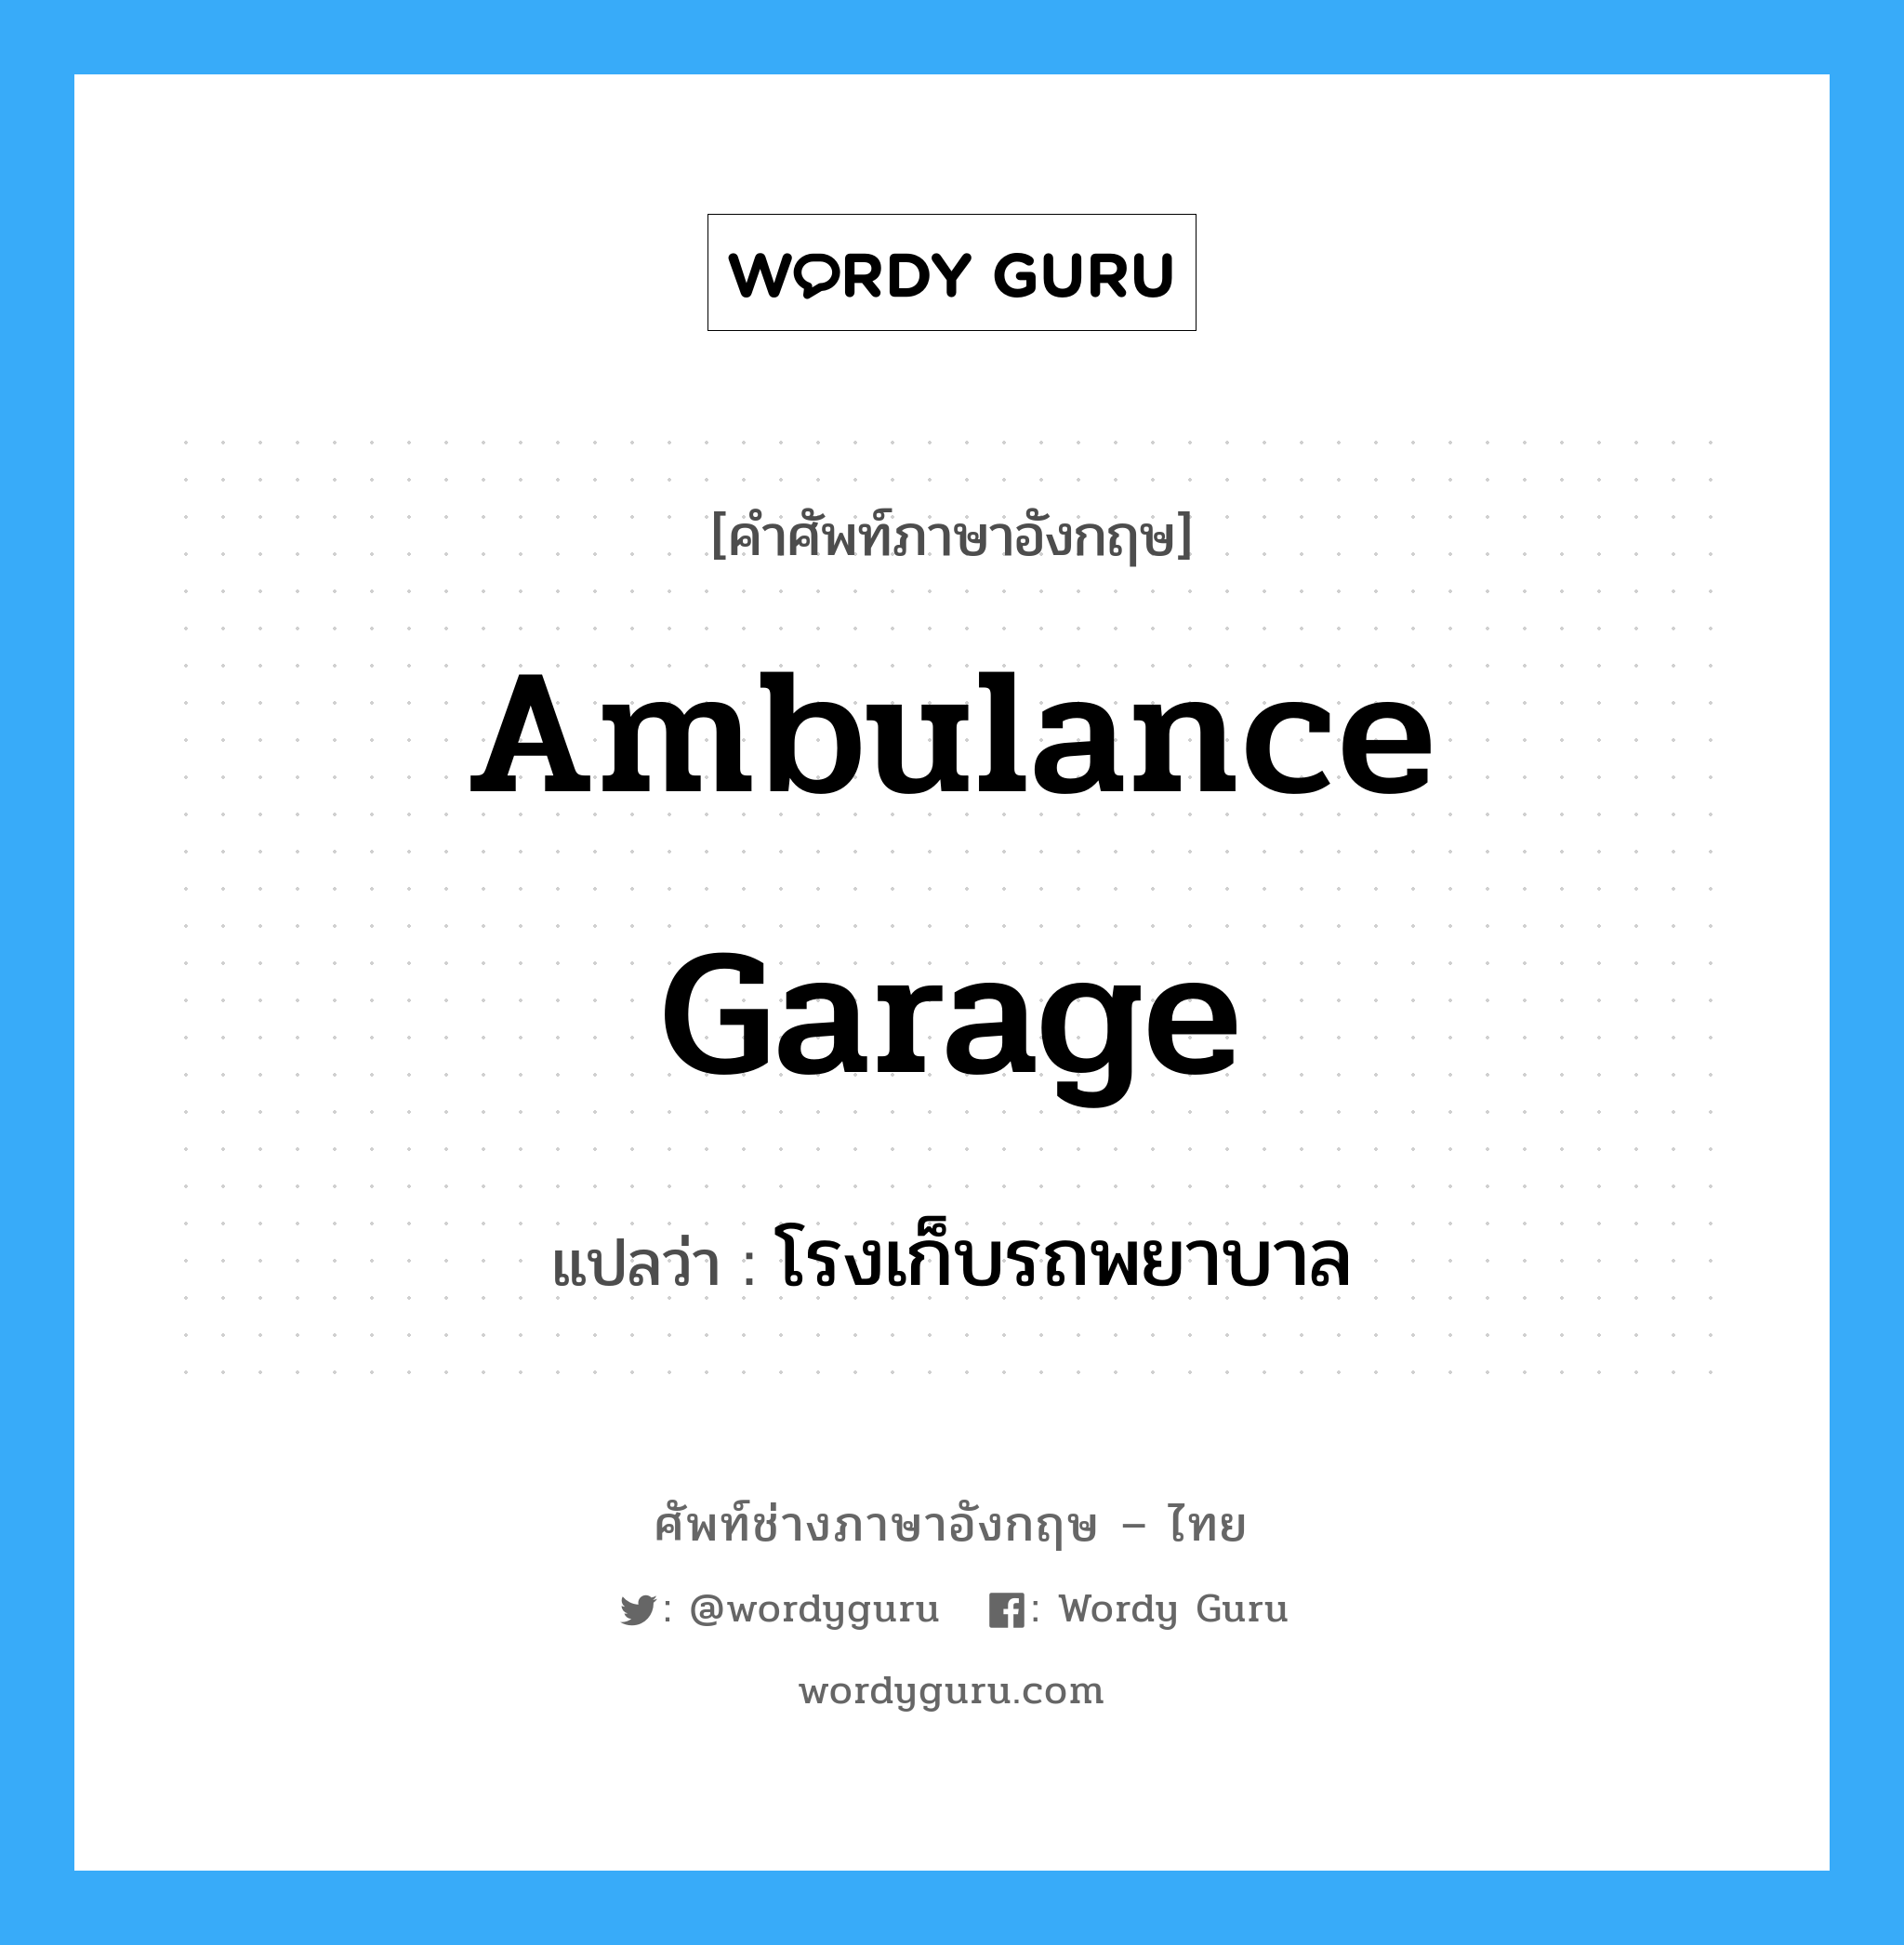 โรงเก็บรถพยาบาล ภาษาอังกฤษ?, คำศัพท์ช่างภาษาอังกฤษ - ไทย โรงเก็บรถพยาบาล คำศัพท์ภาษาอังกฤษ โรงเก็บรถพยาบาล แปลว่า ambulance garage